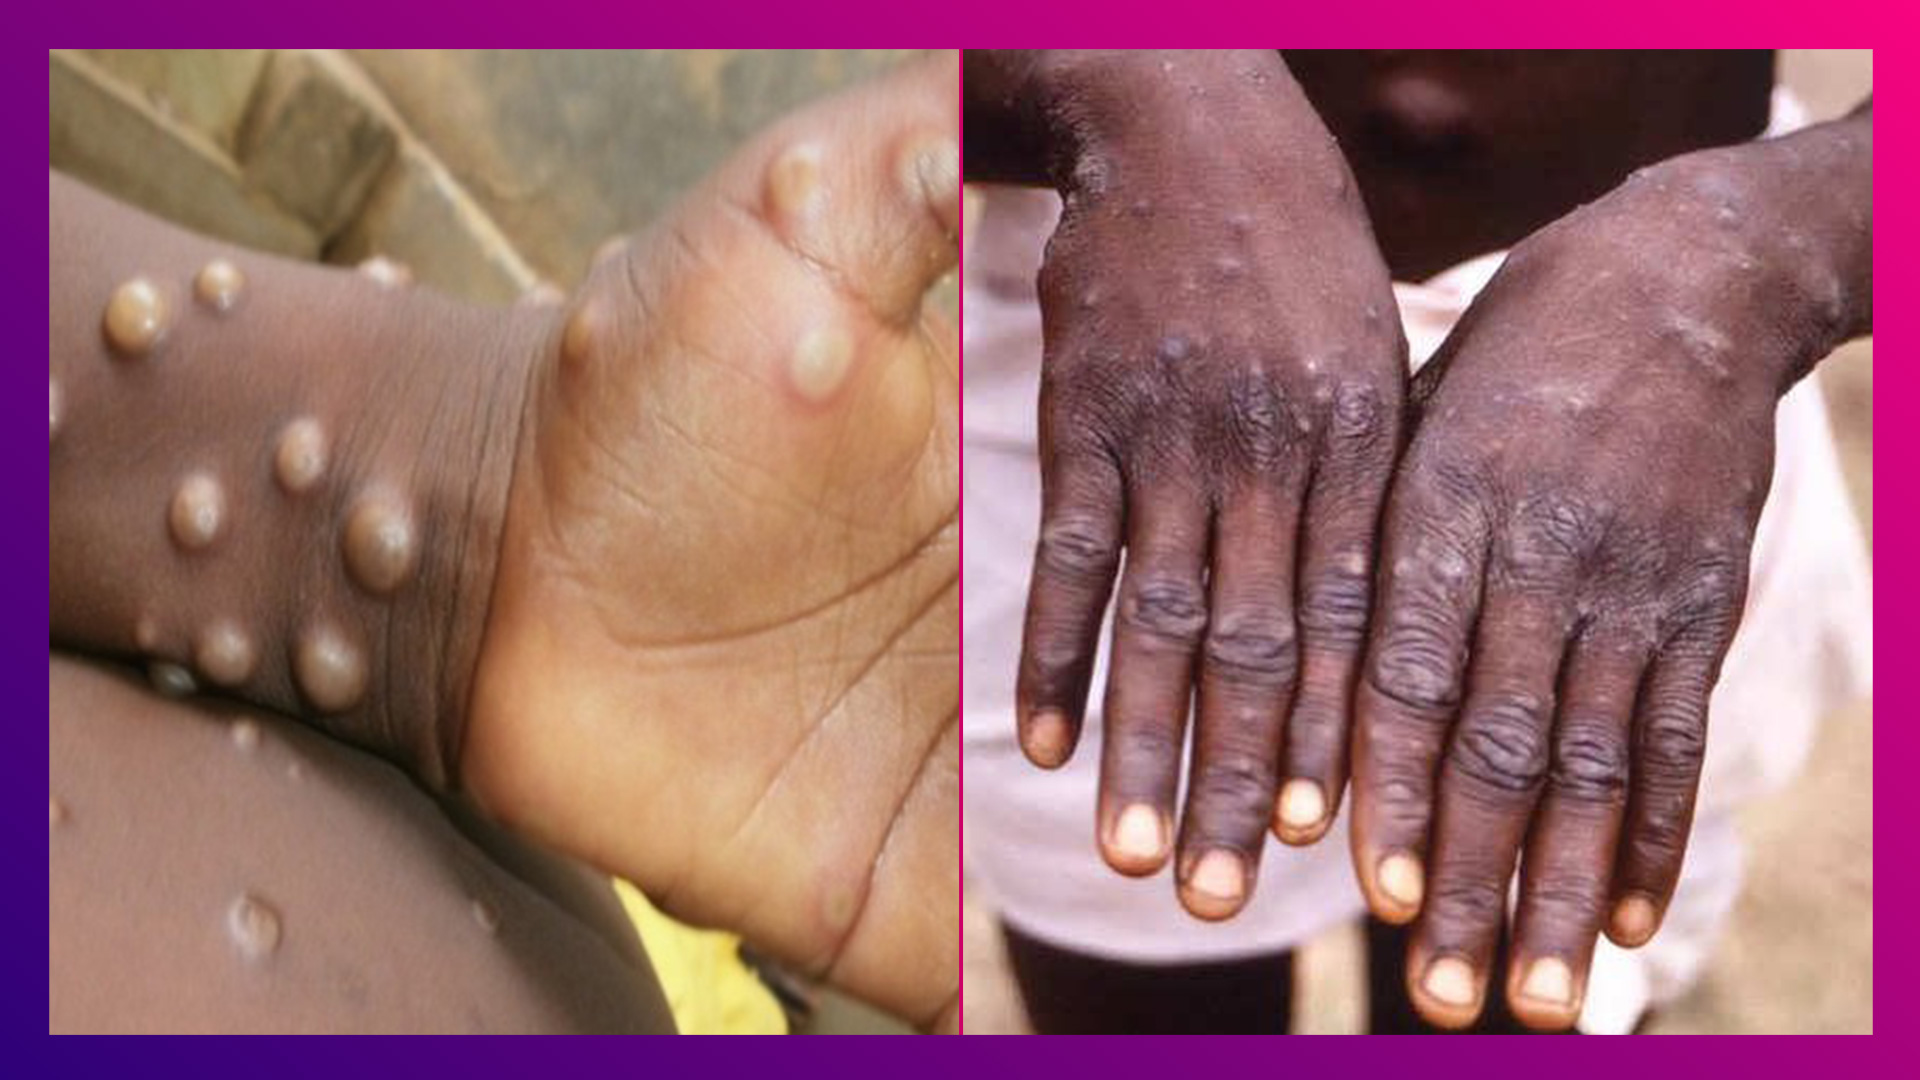 Monkeypox in India: দিল্লিতে মাঙ্কিপক্সের পঞ্চম আক্রান্ত, নাইজেরিয়া ফেরত ২২ বছরের মহিলার রিপোর্ট MPV পজেটিভ